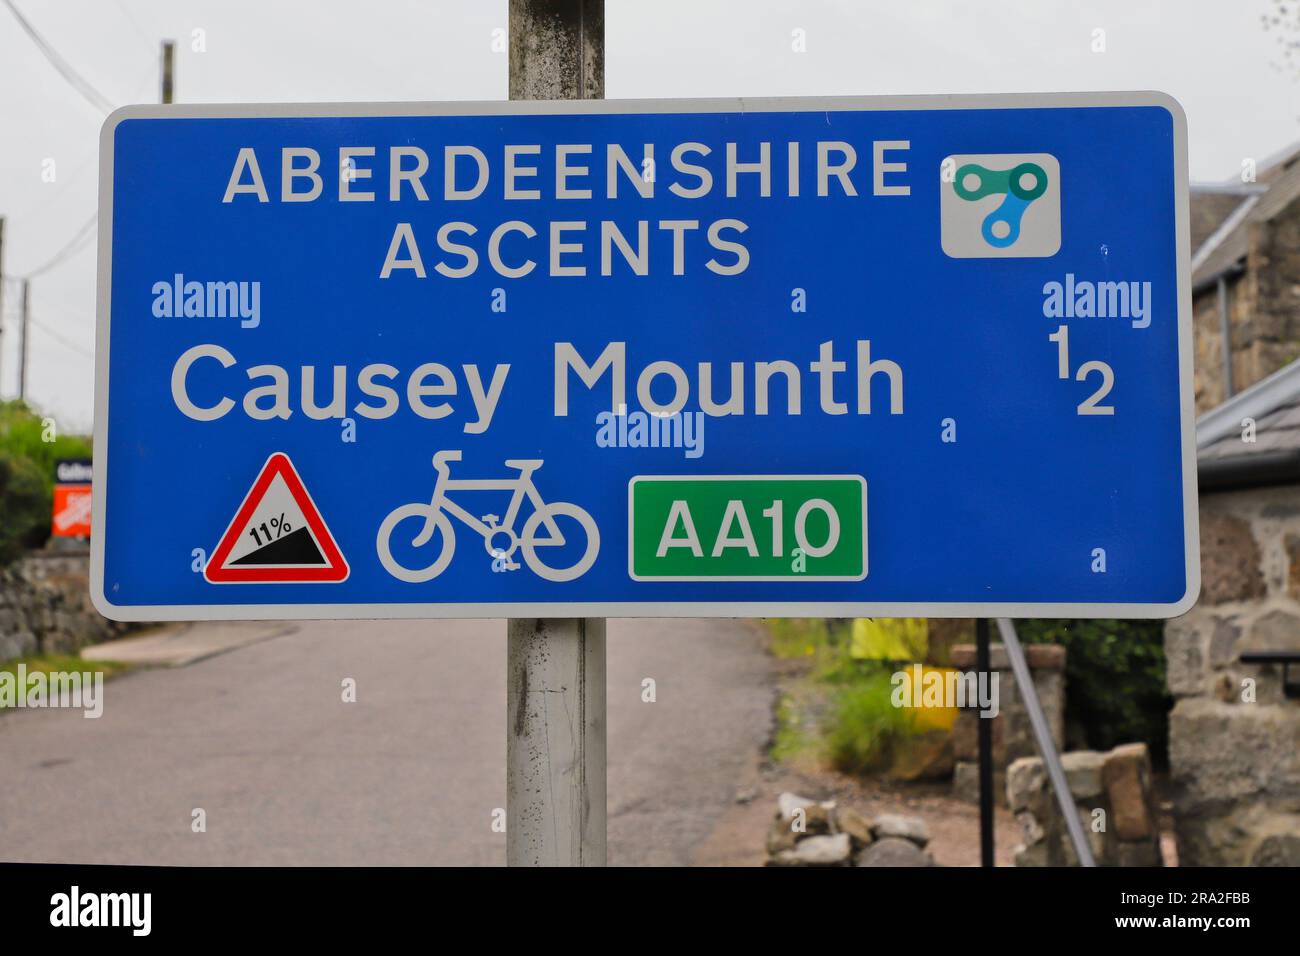 Schild für Aberdeenshire Ascents - Causey Mounth auf der B9077 in der Nähe von Aberdeen Scotland am 2023. Juni Stockfoto